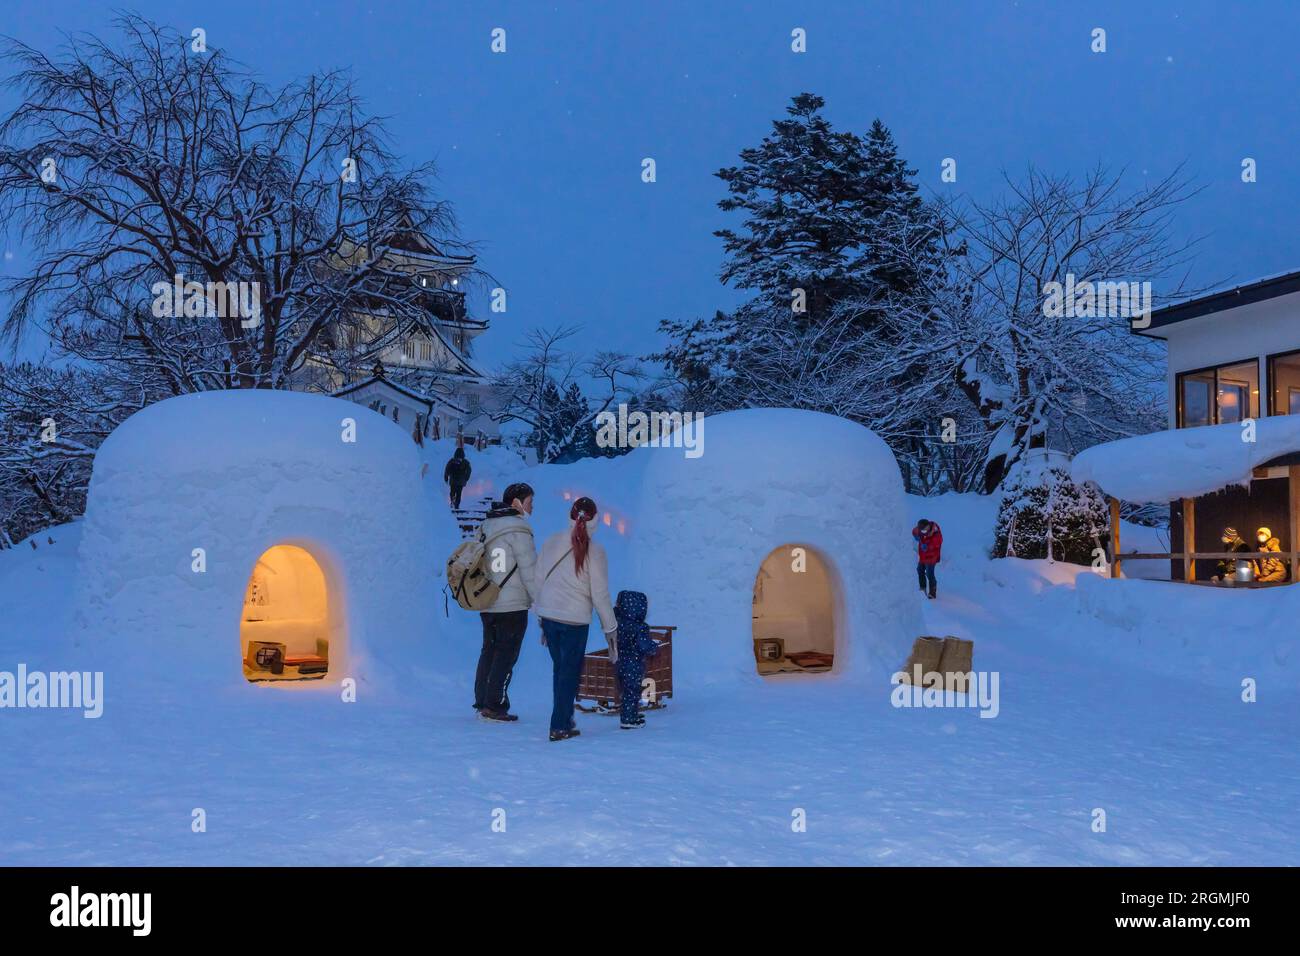 Kamakura, festival d'hiver local, dôme de neige (igloo), sanctuaire du dieu de l'eau, Yokote-JO (château), ville de Yokote, Akita, Tohoku, Japon, Asie de l'est, Asie Banque D'Images